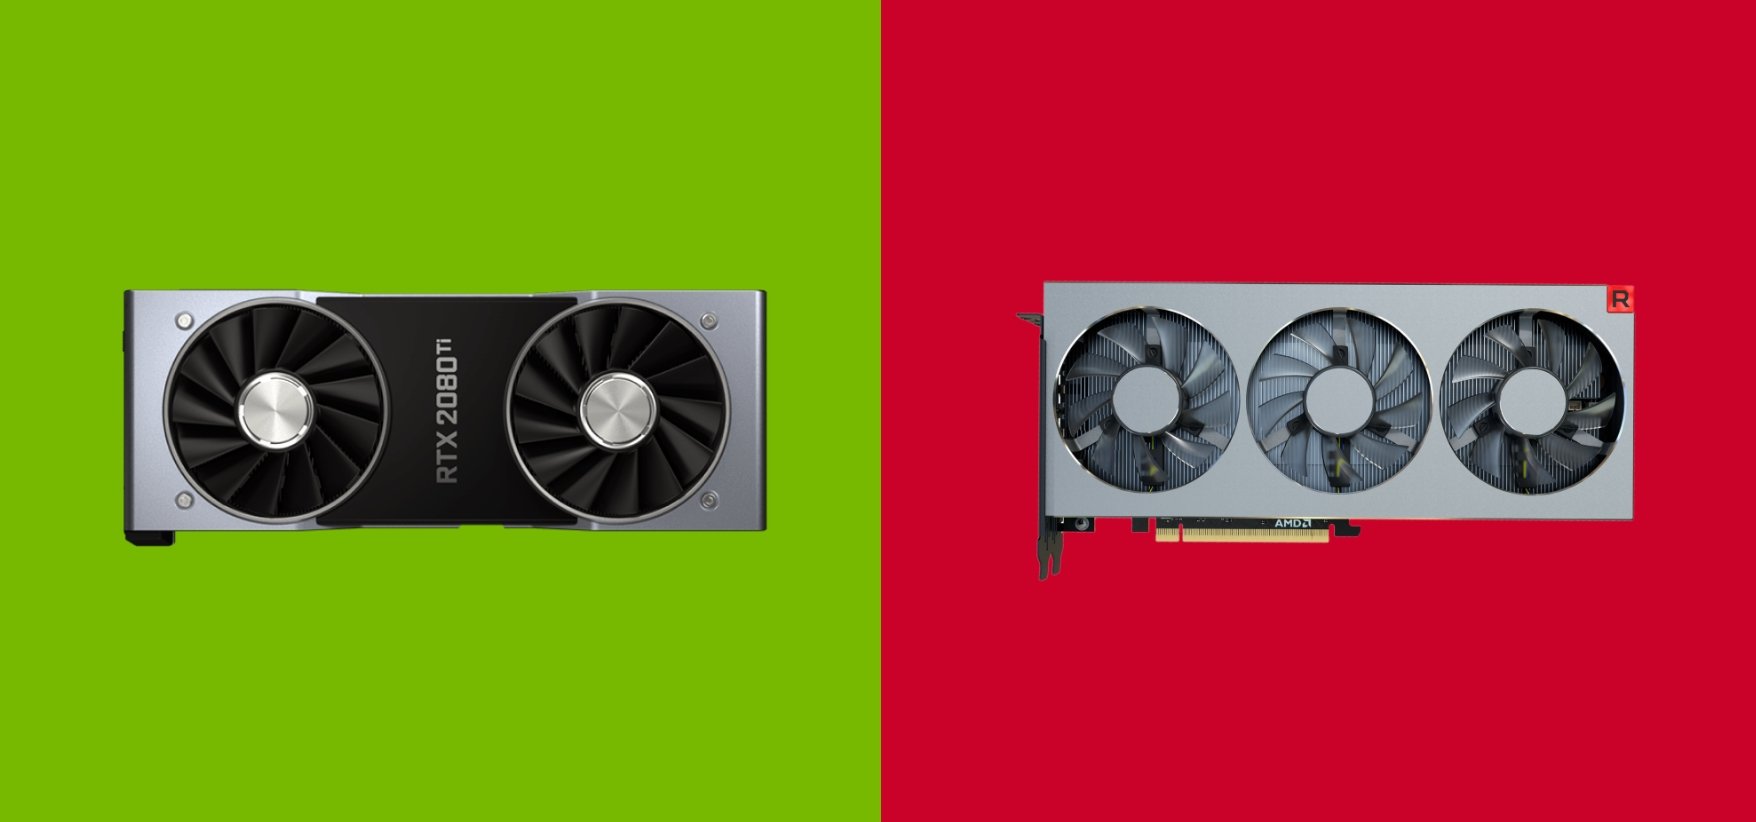 Nvidia-GPU-vs-AMD-GPU.jpg